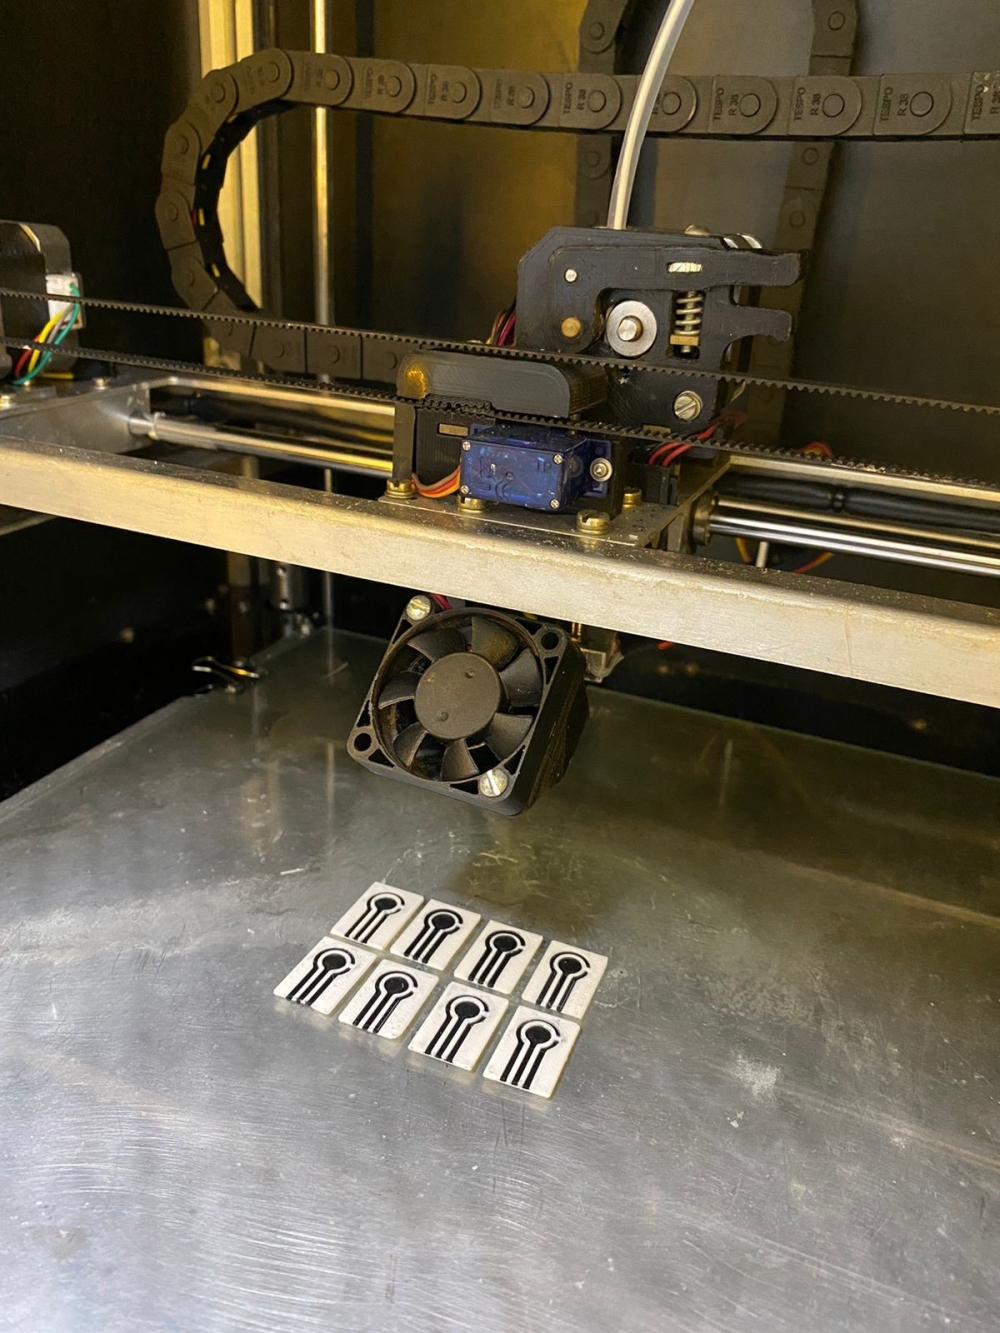 Artigo disponibiliza protocolo para produção de equipamentos de laboratório por impressão 3D